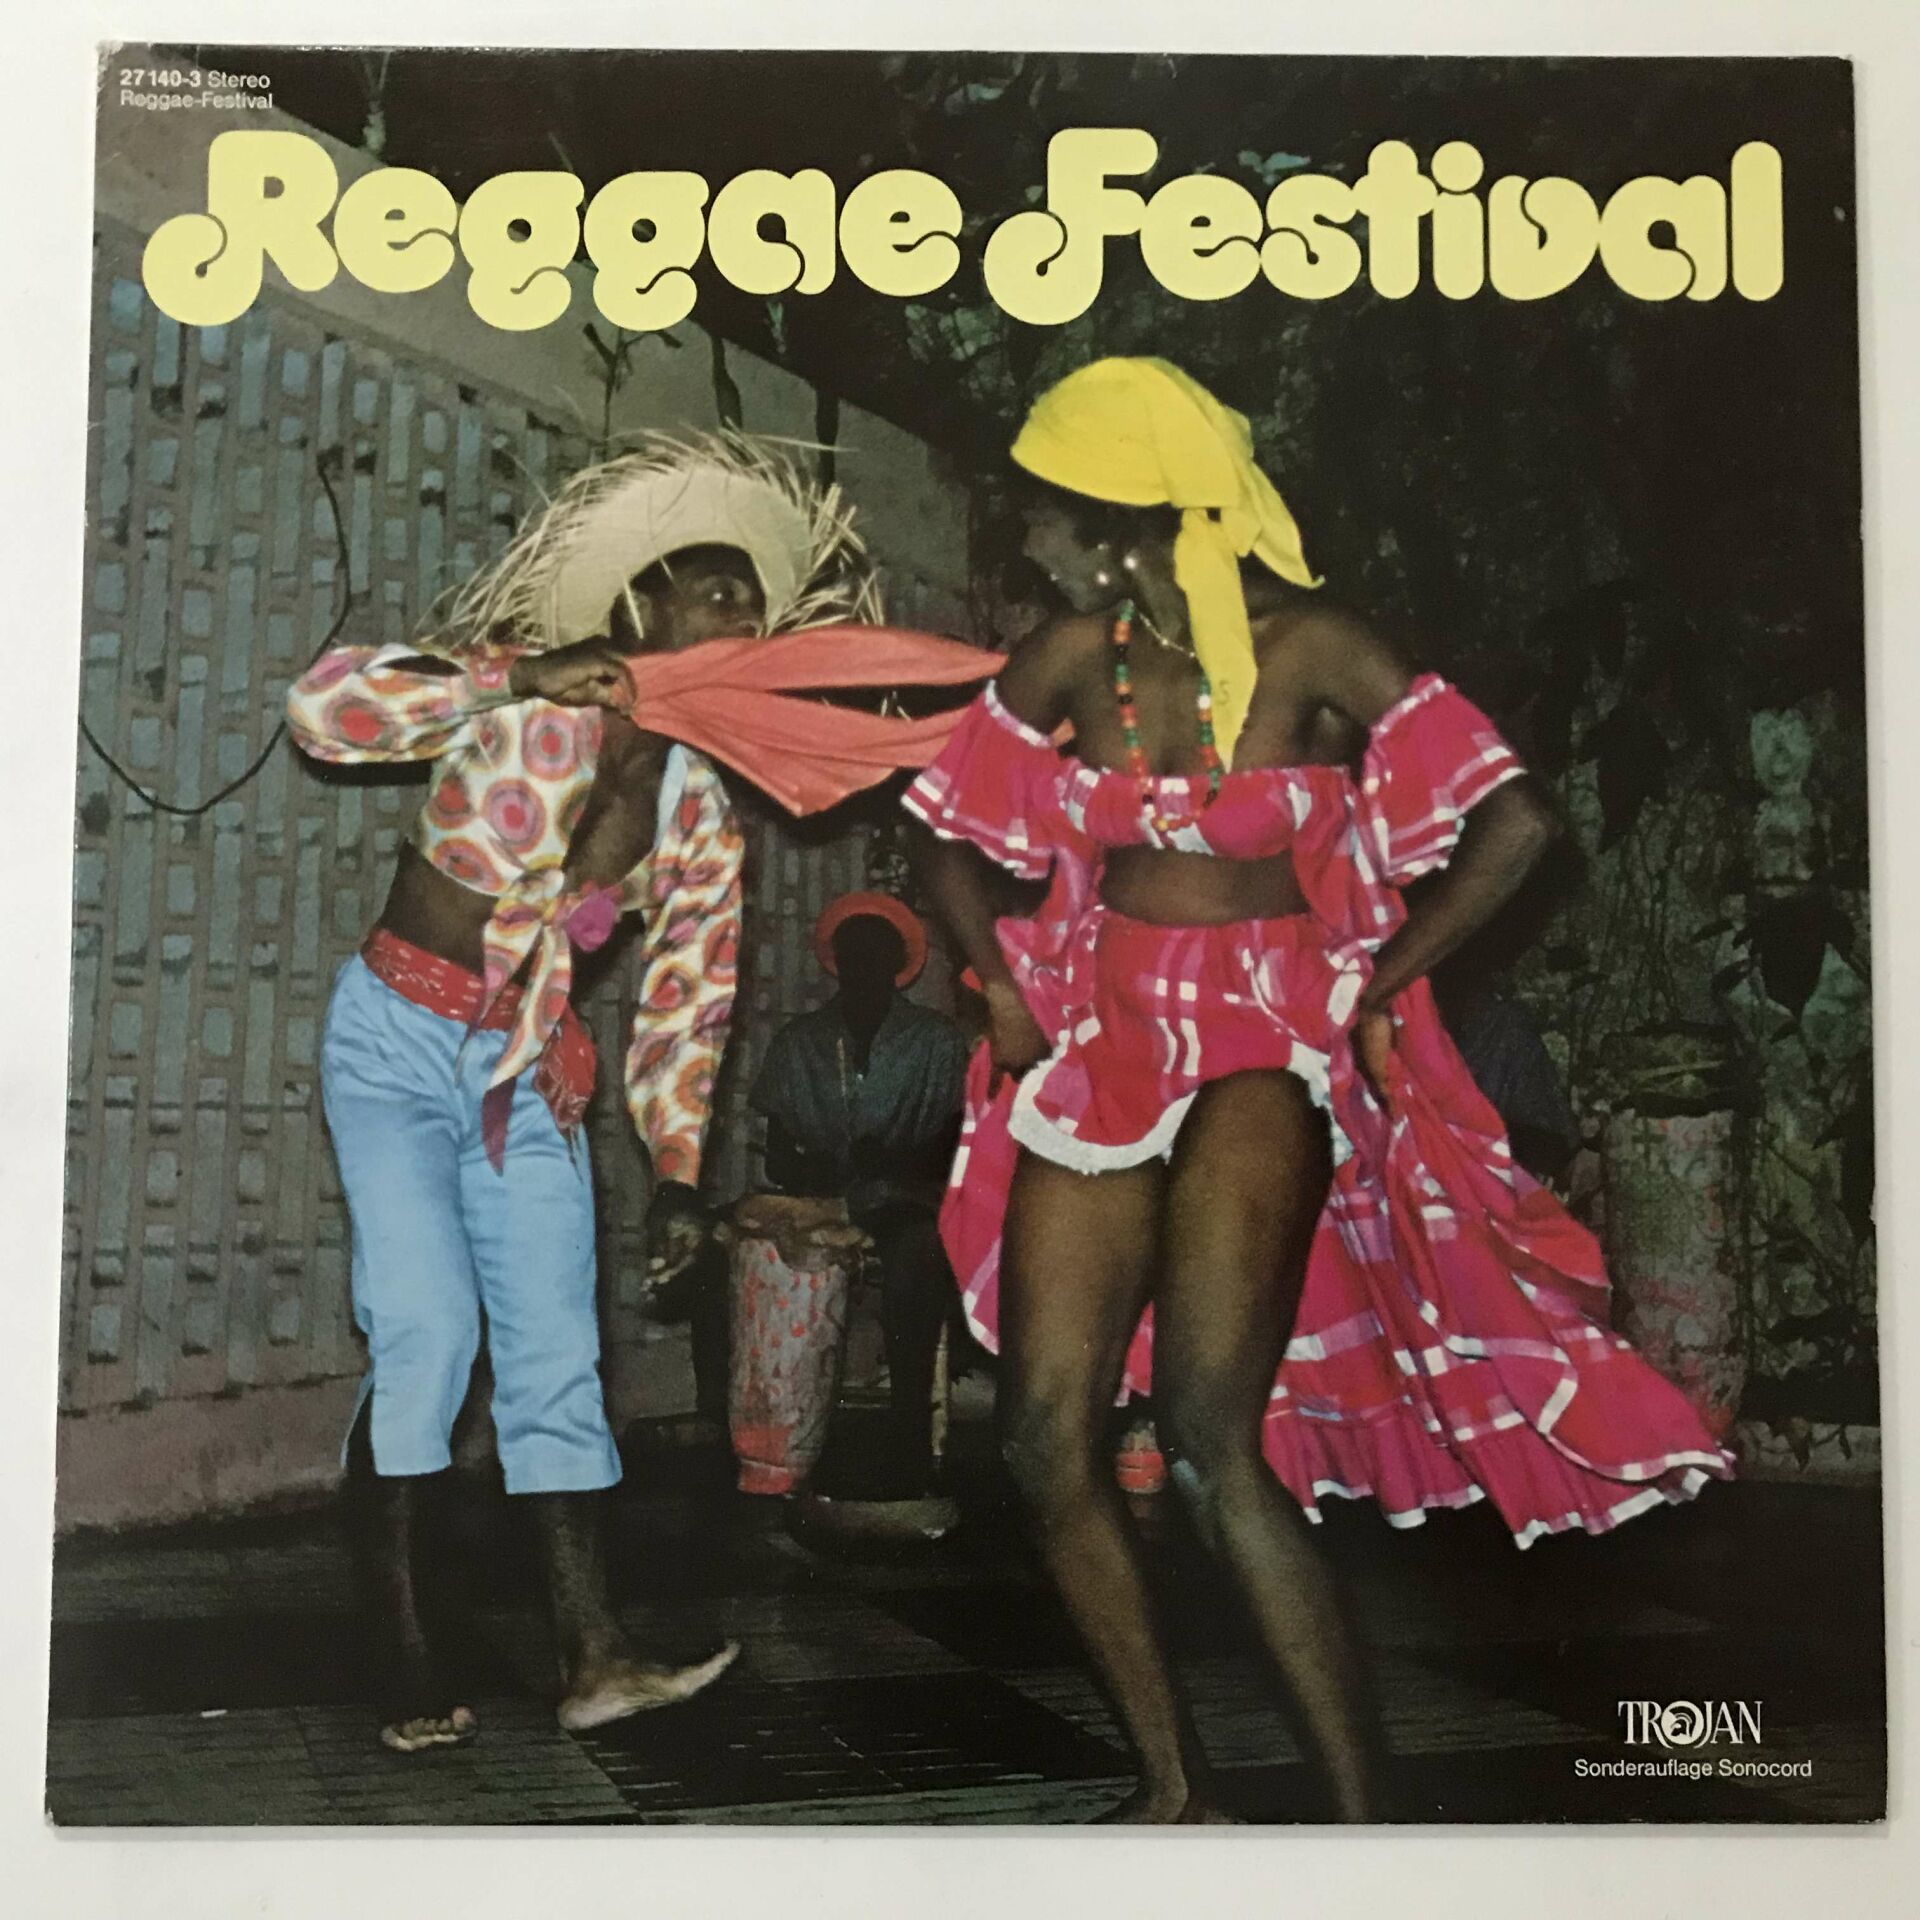 Reggae Festival